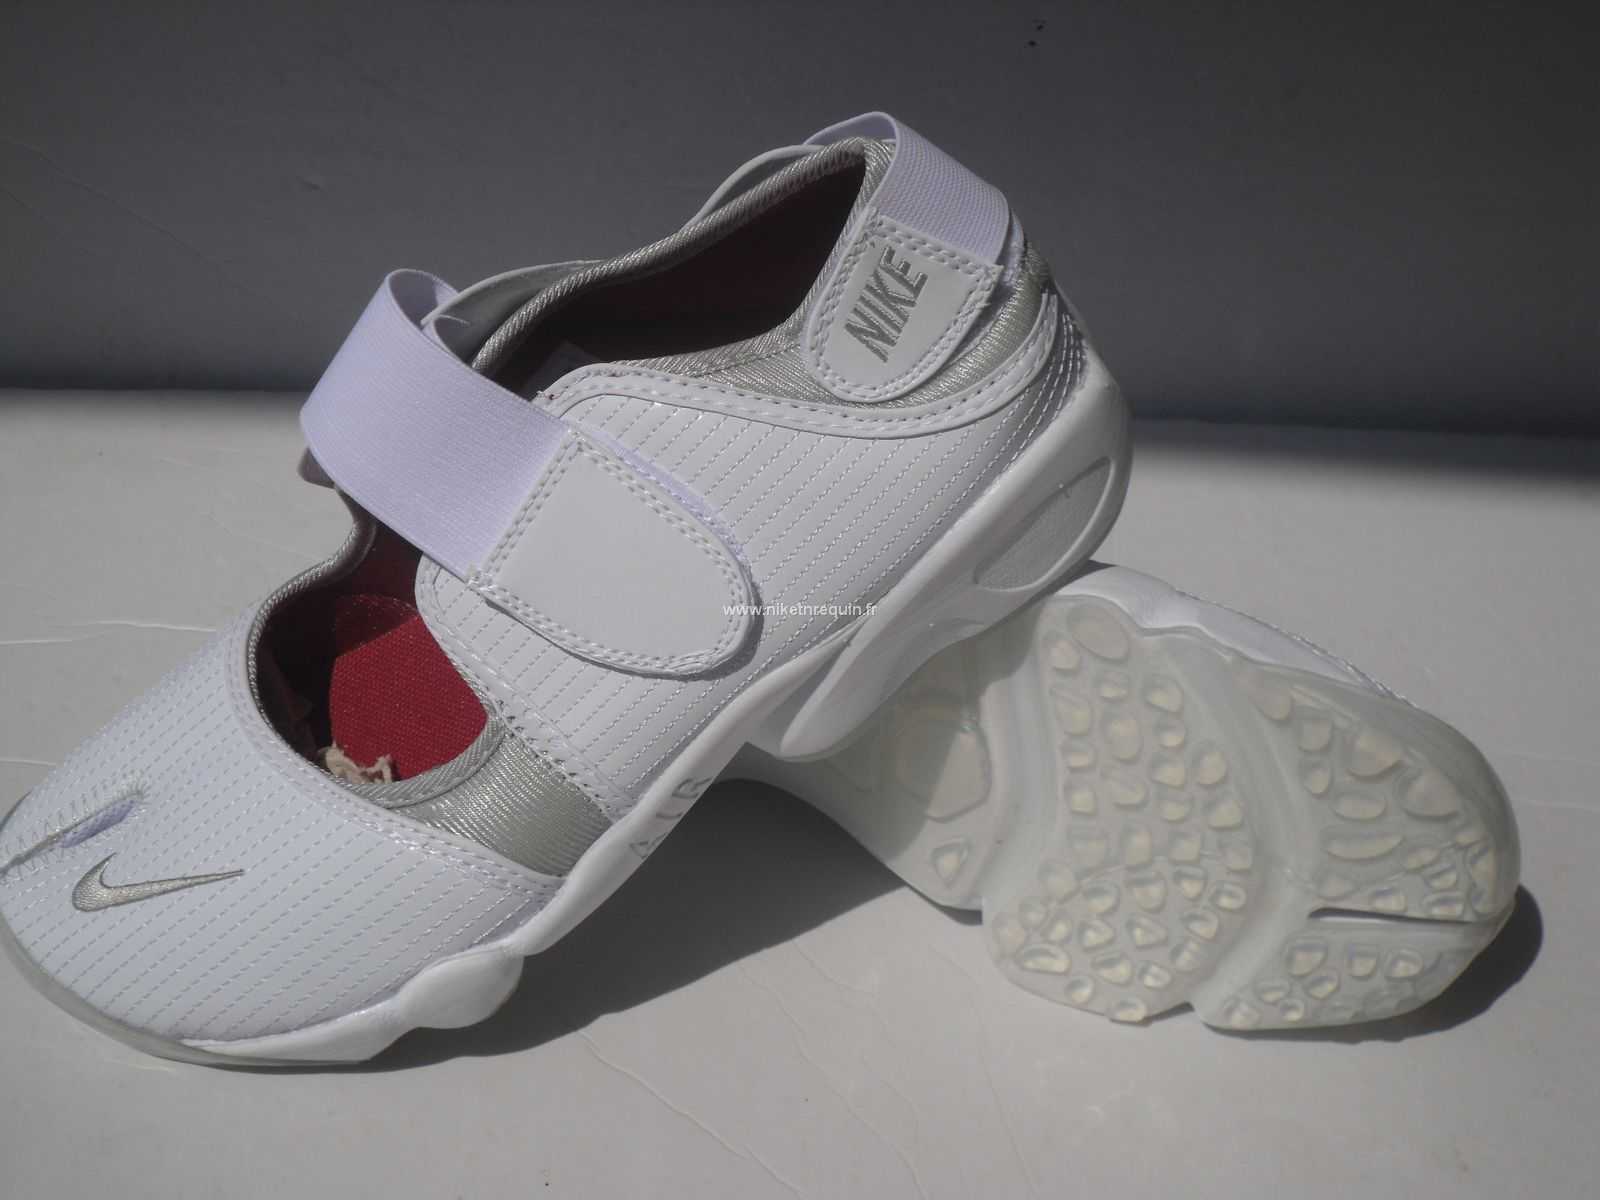 Nouveau Modele De La Jeunesse Chaussures Nike Shox Rift Blanche